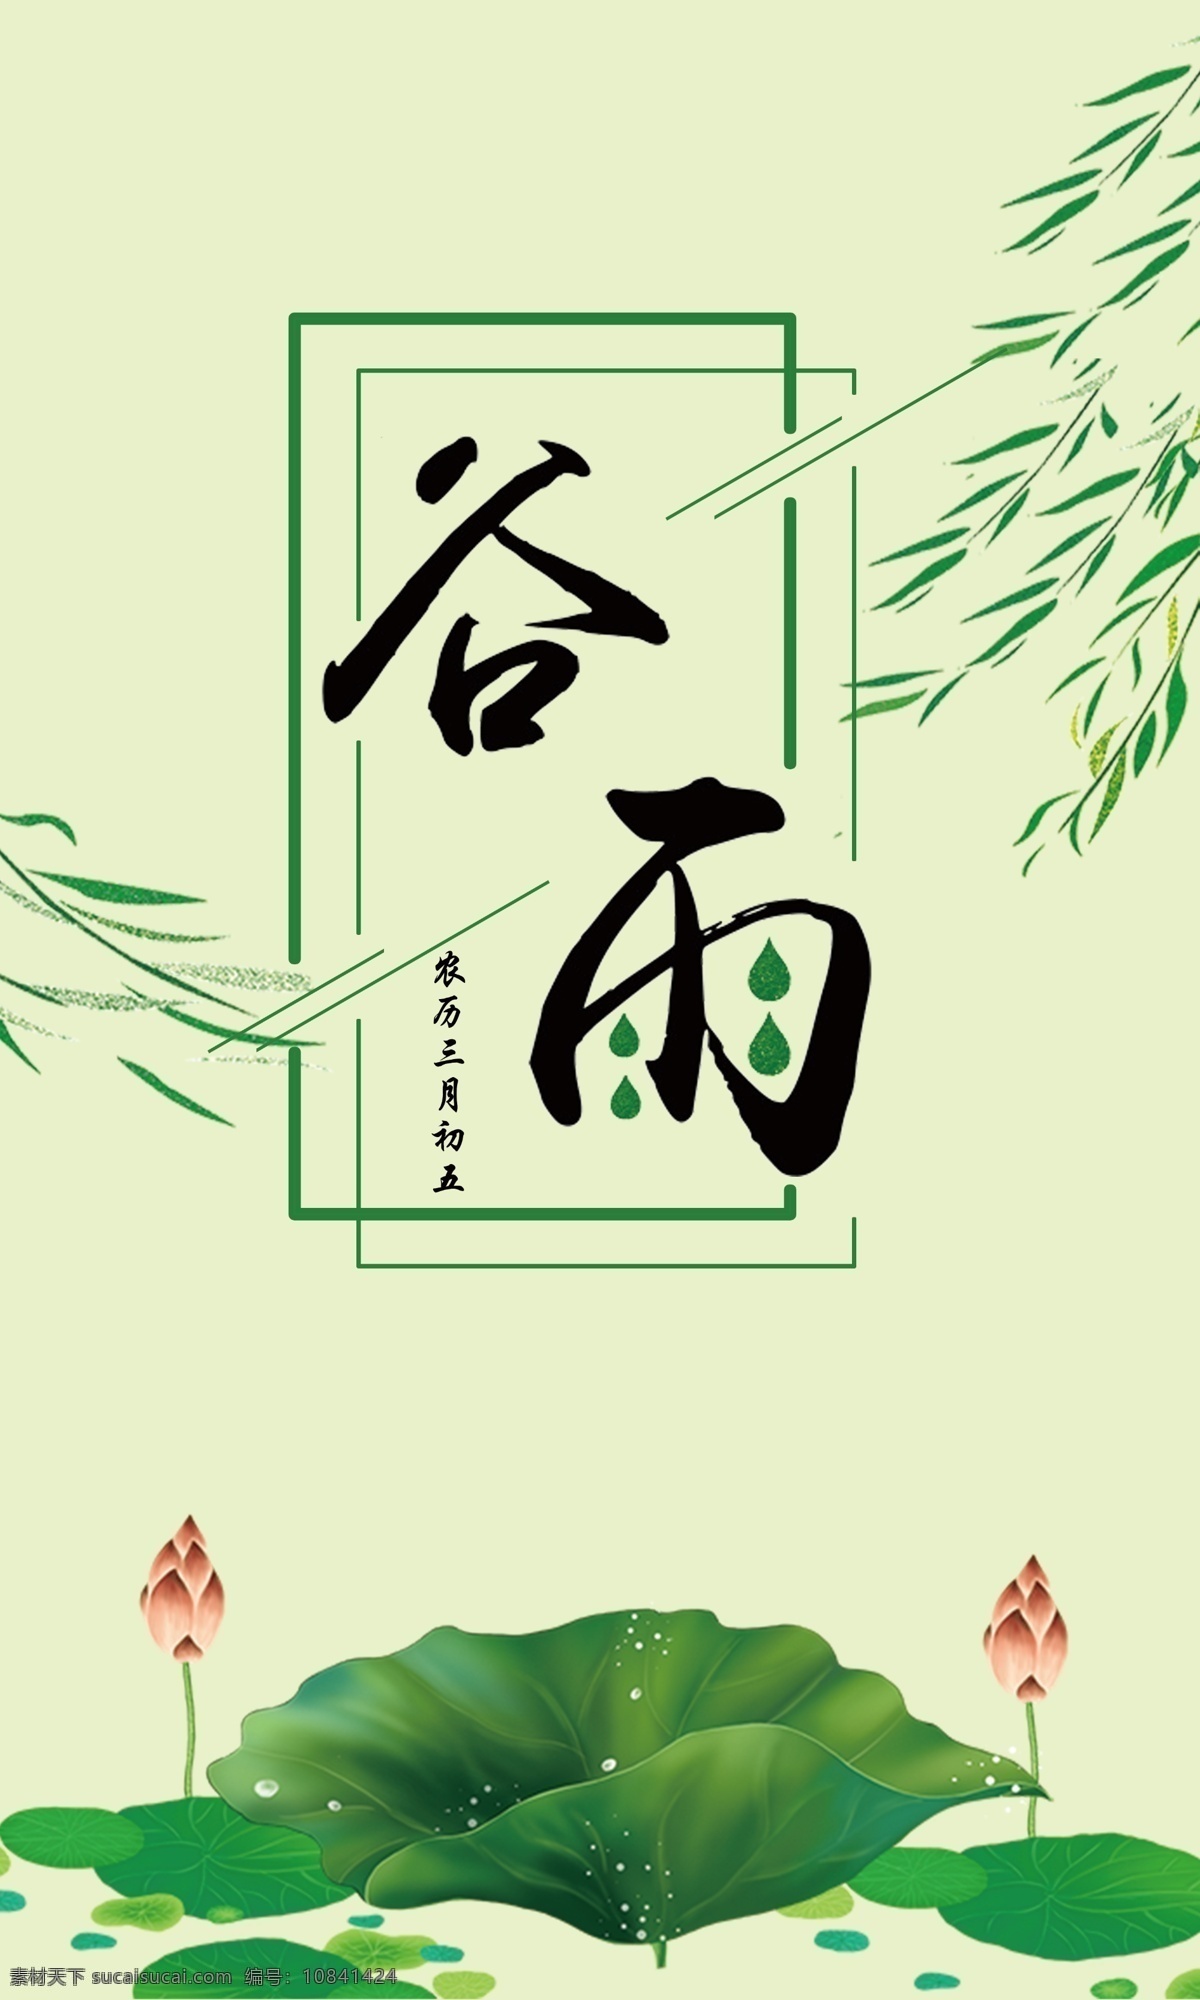 谷雨 节气 海报 手机 宣传 图 二十四节气 柳叶 荷叶 绿色 传统节气 手机用图